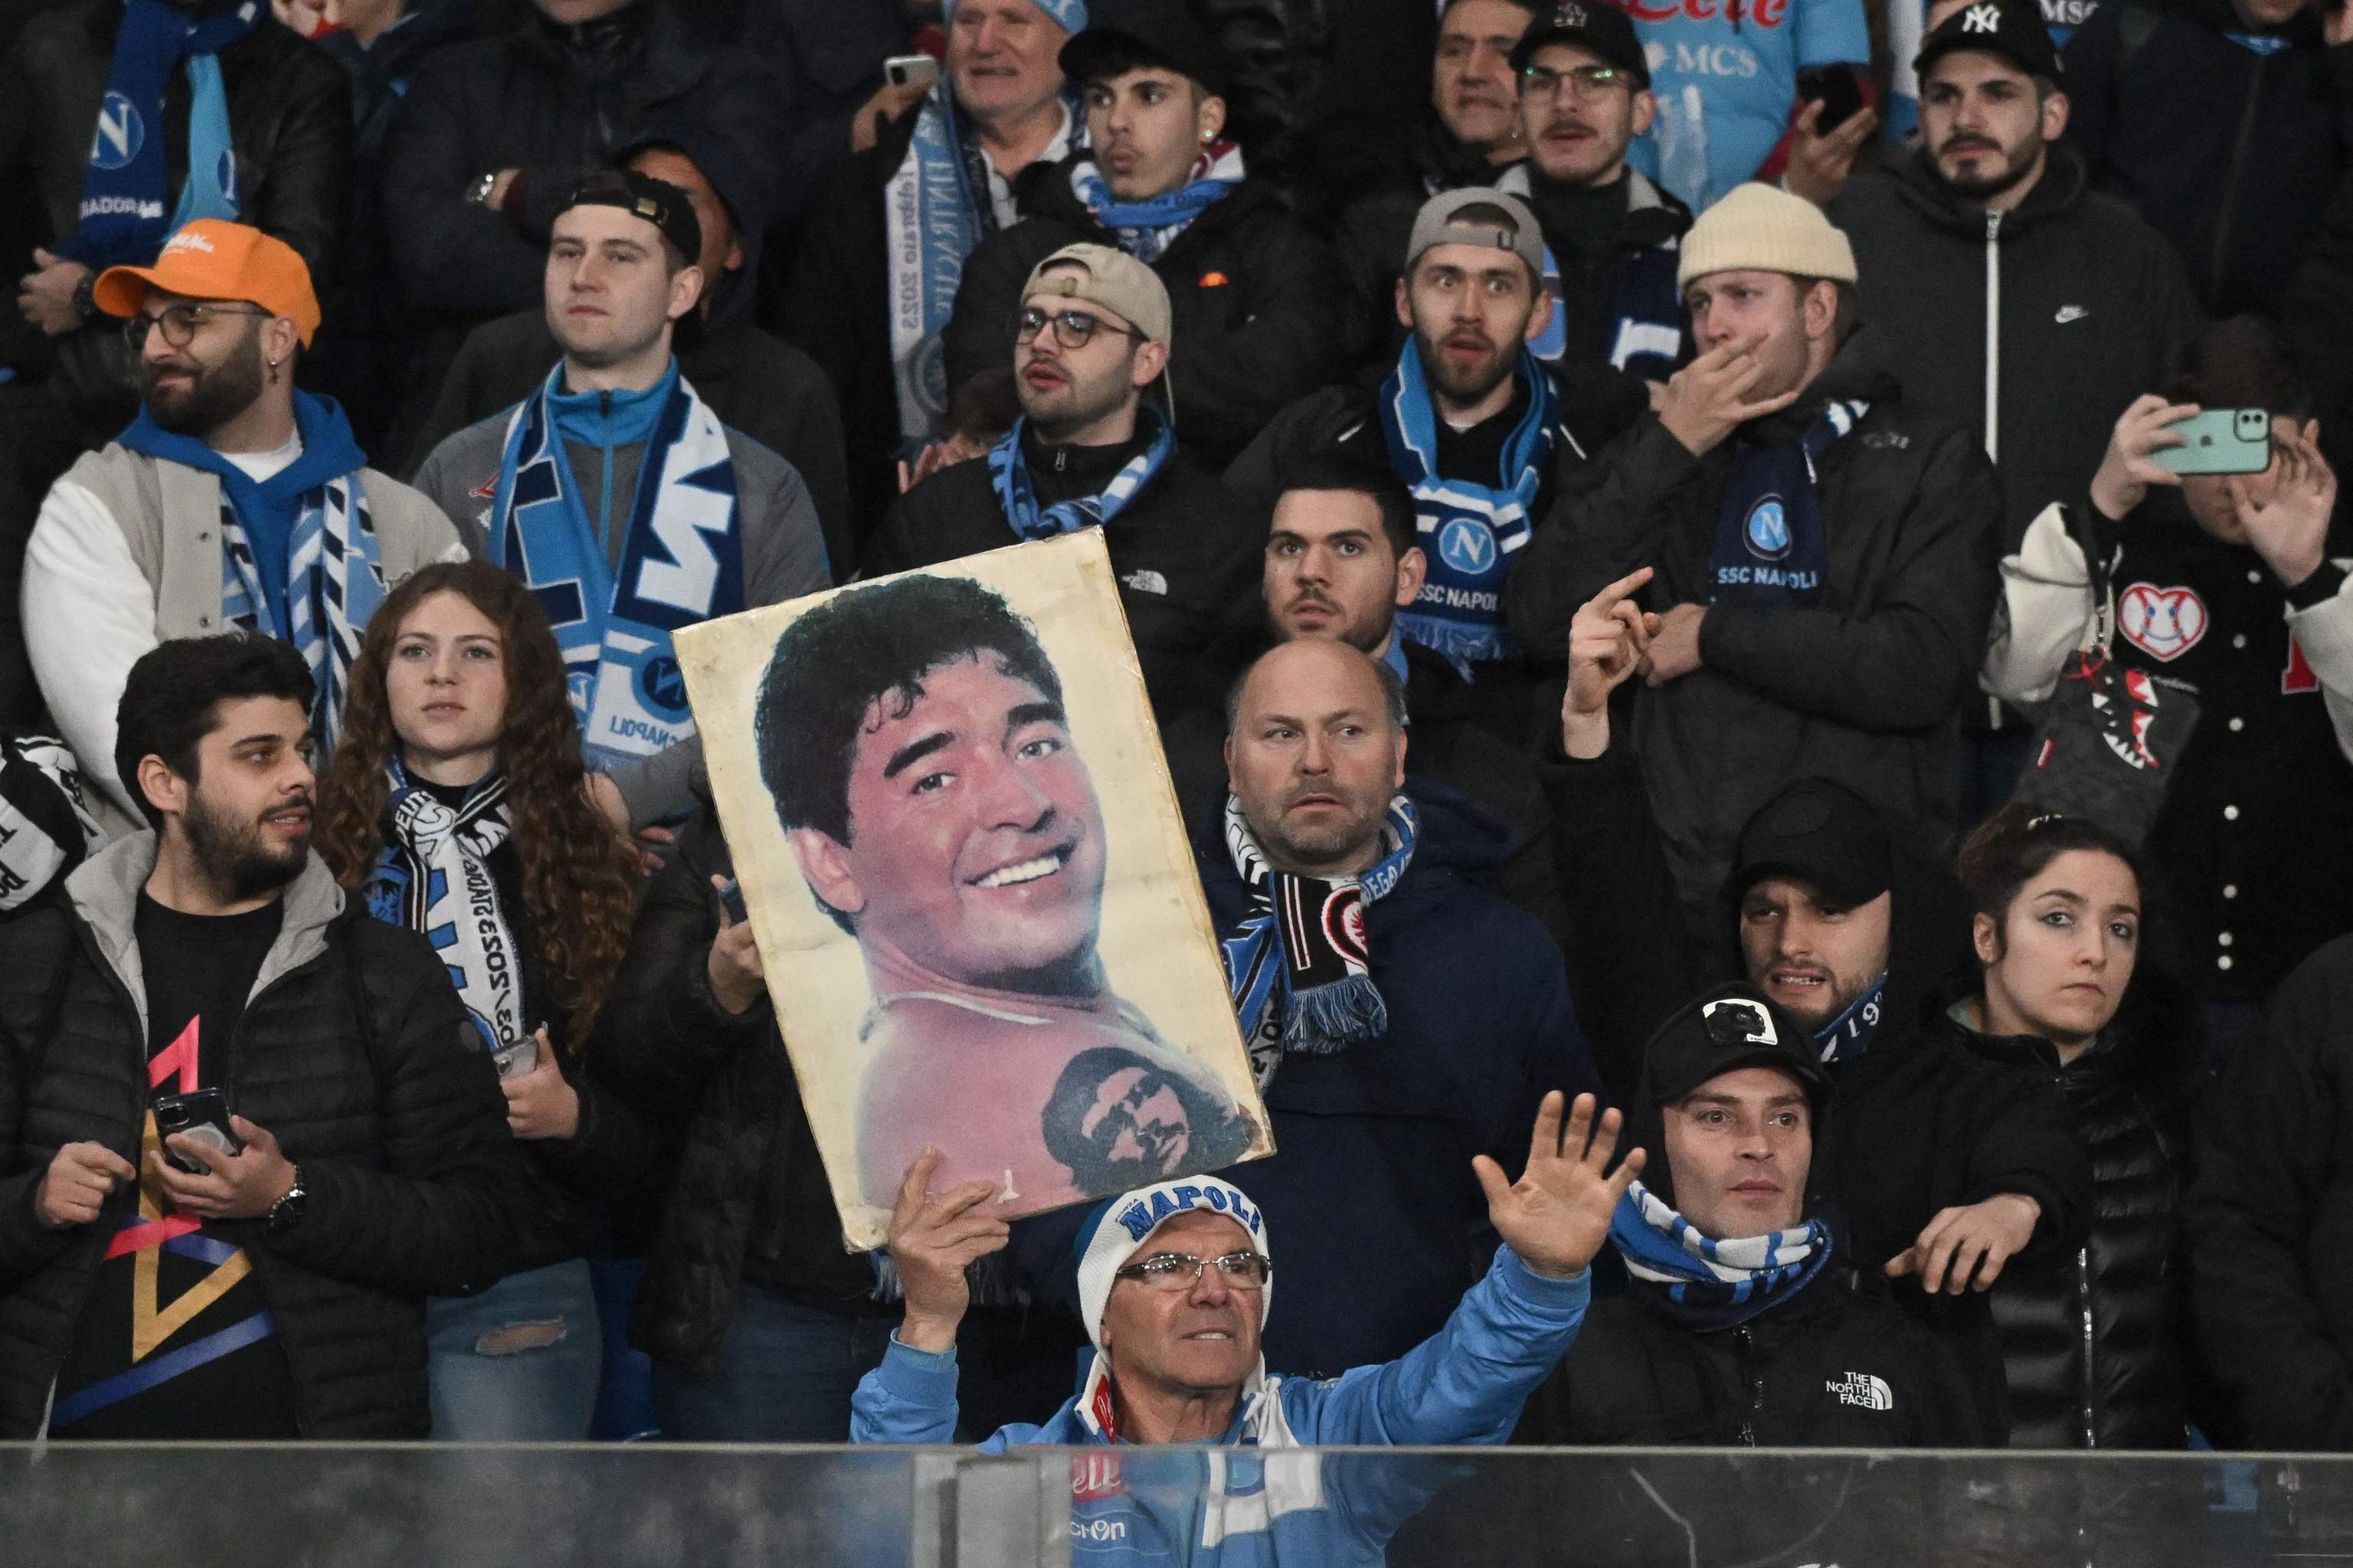 Imagen de Maradona en las gradas del SCC Npoles.